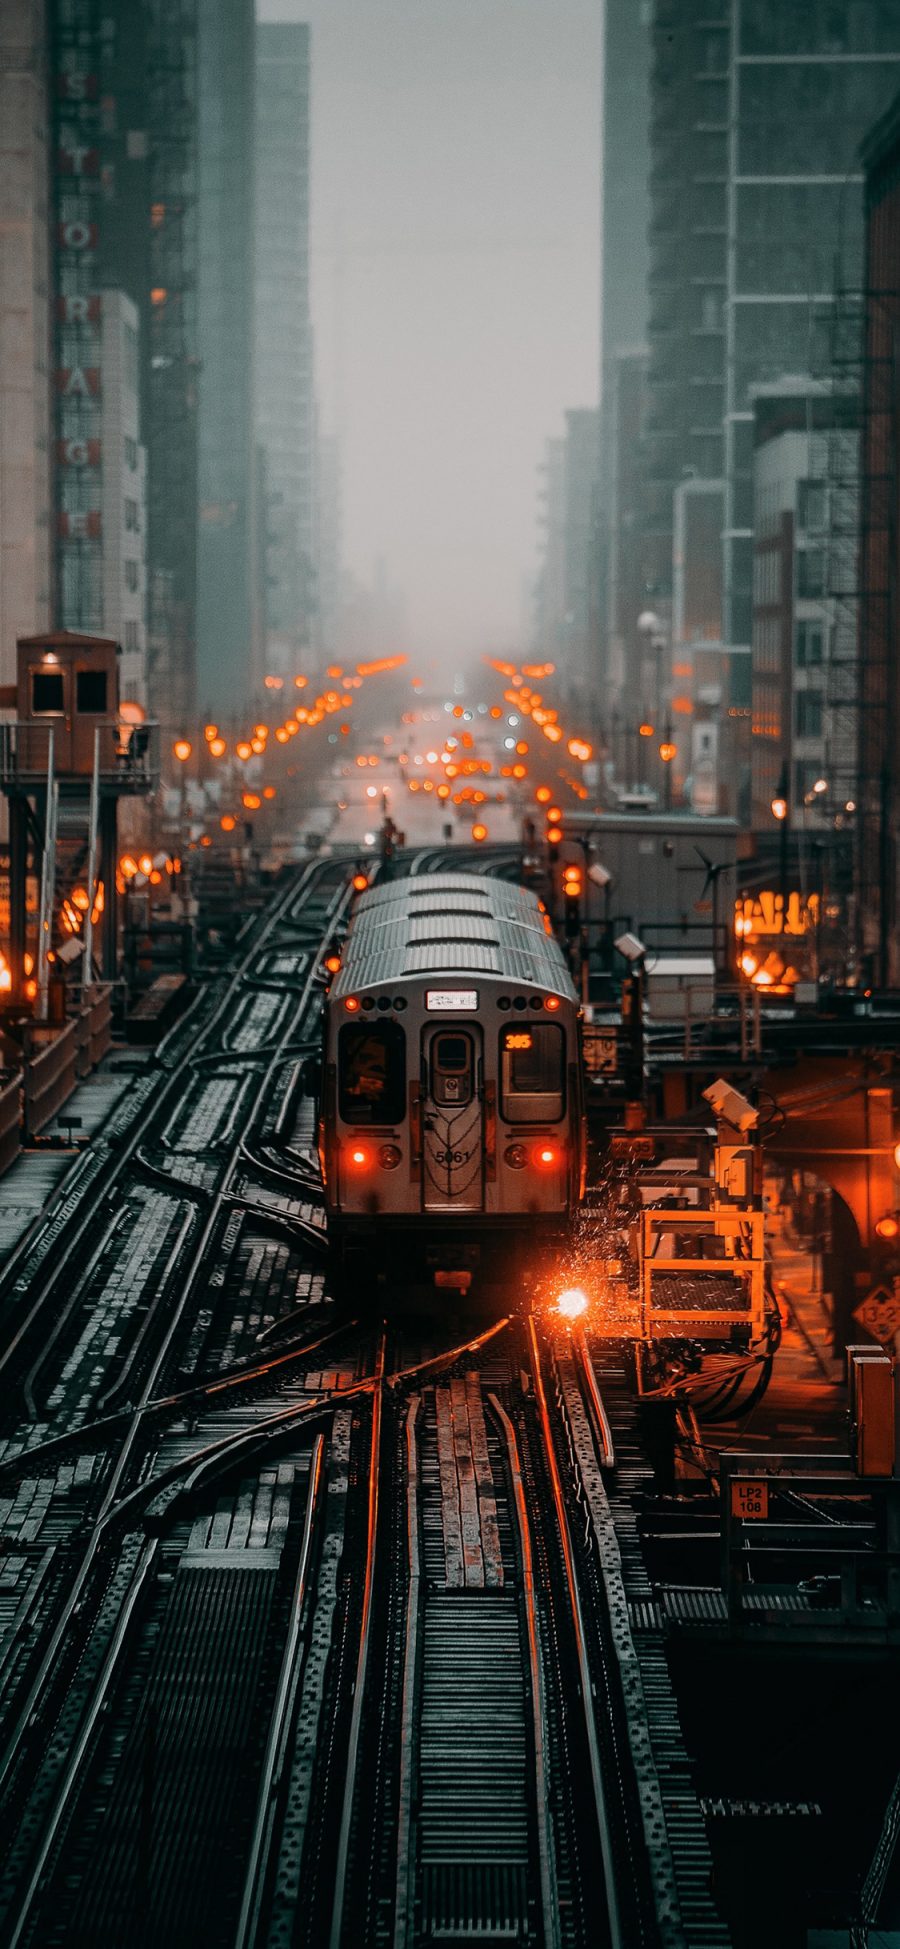 [2436×1125]列车 铁轨 火车 交通 道路 城市 苹果手机壁纸图片